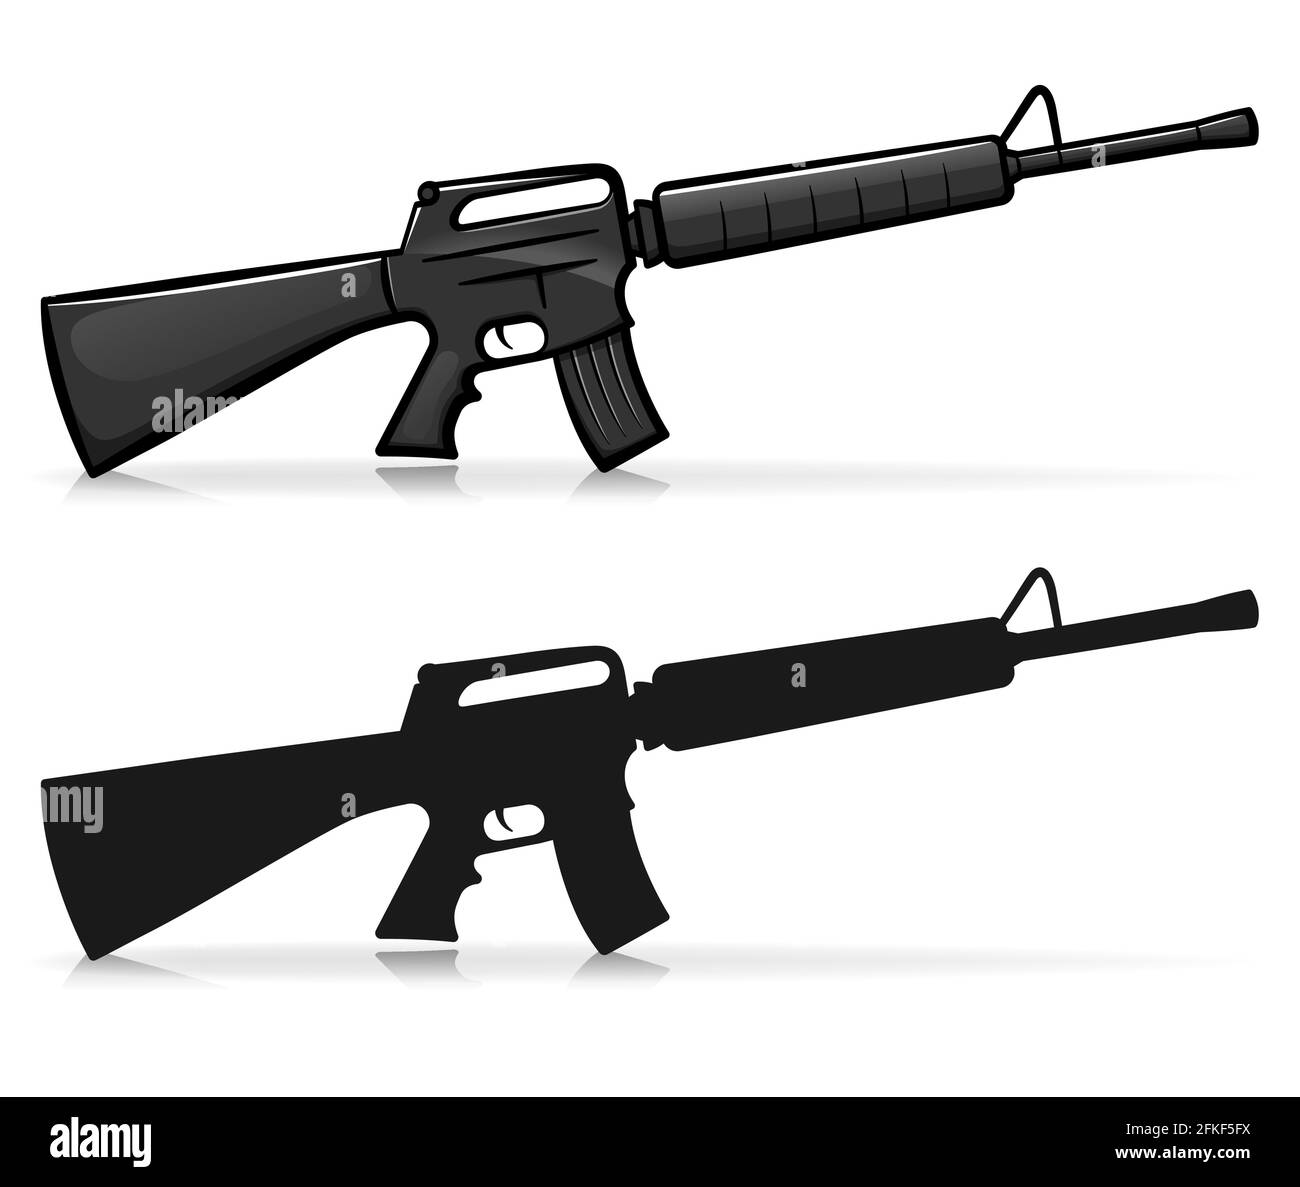 Vector illustration of kalashnikov army firearm cartoon Stock Vector